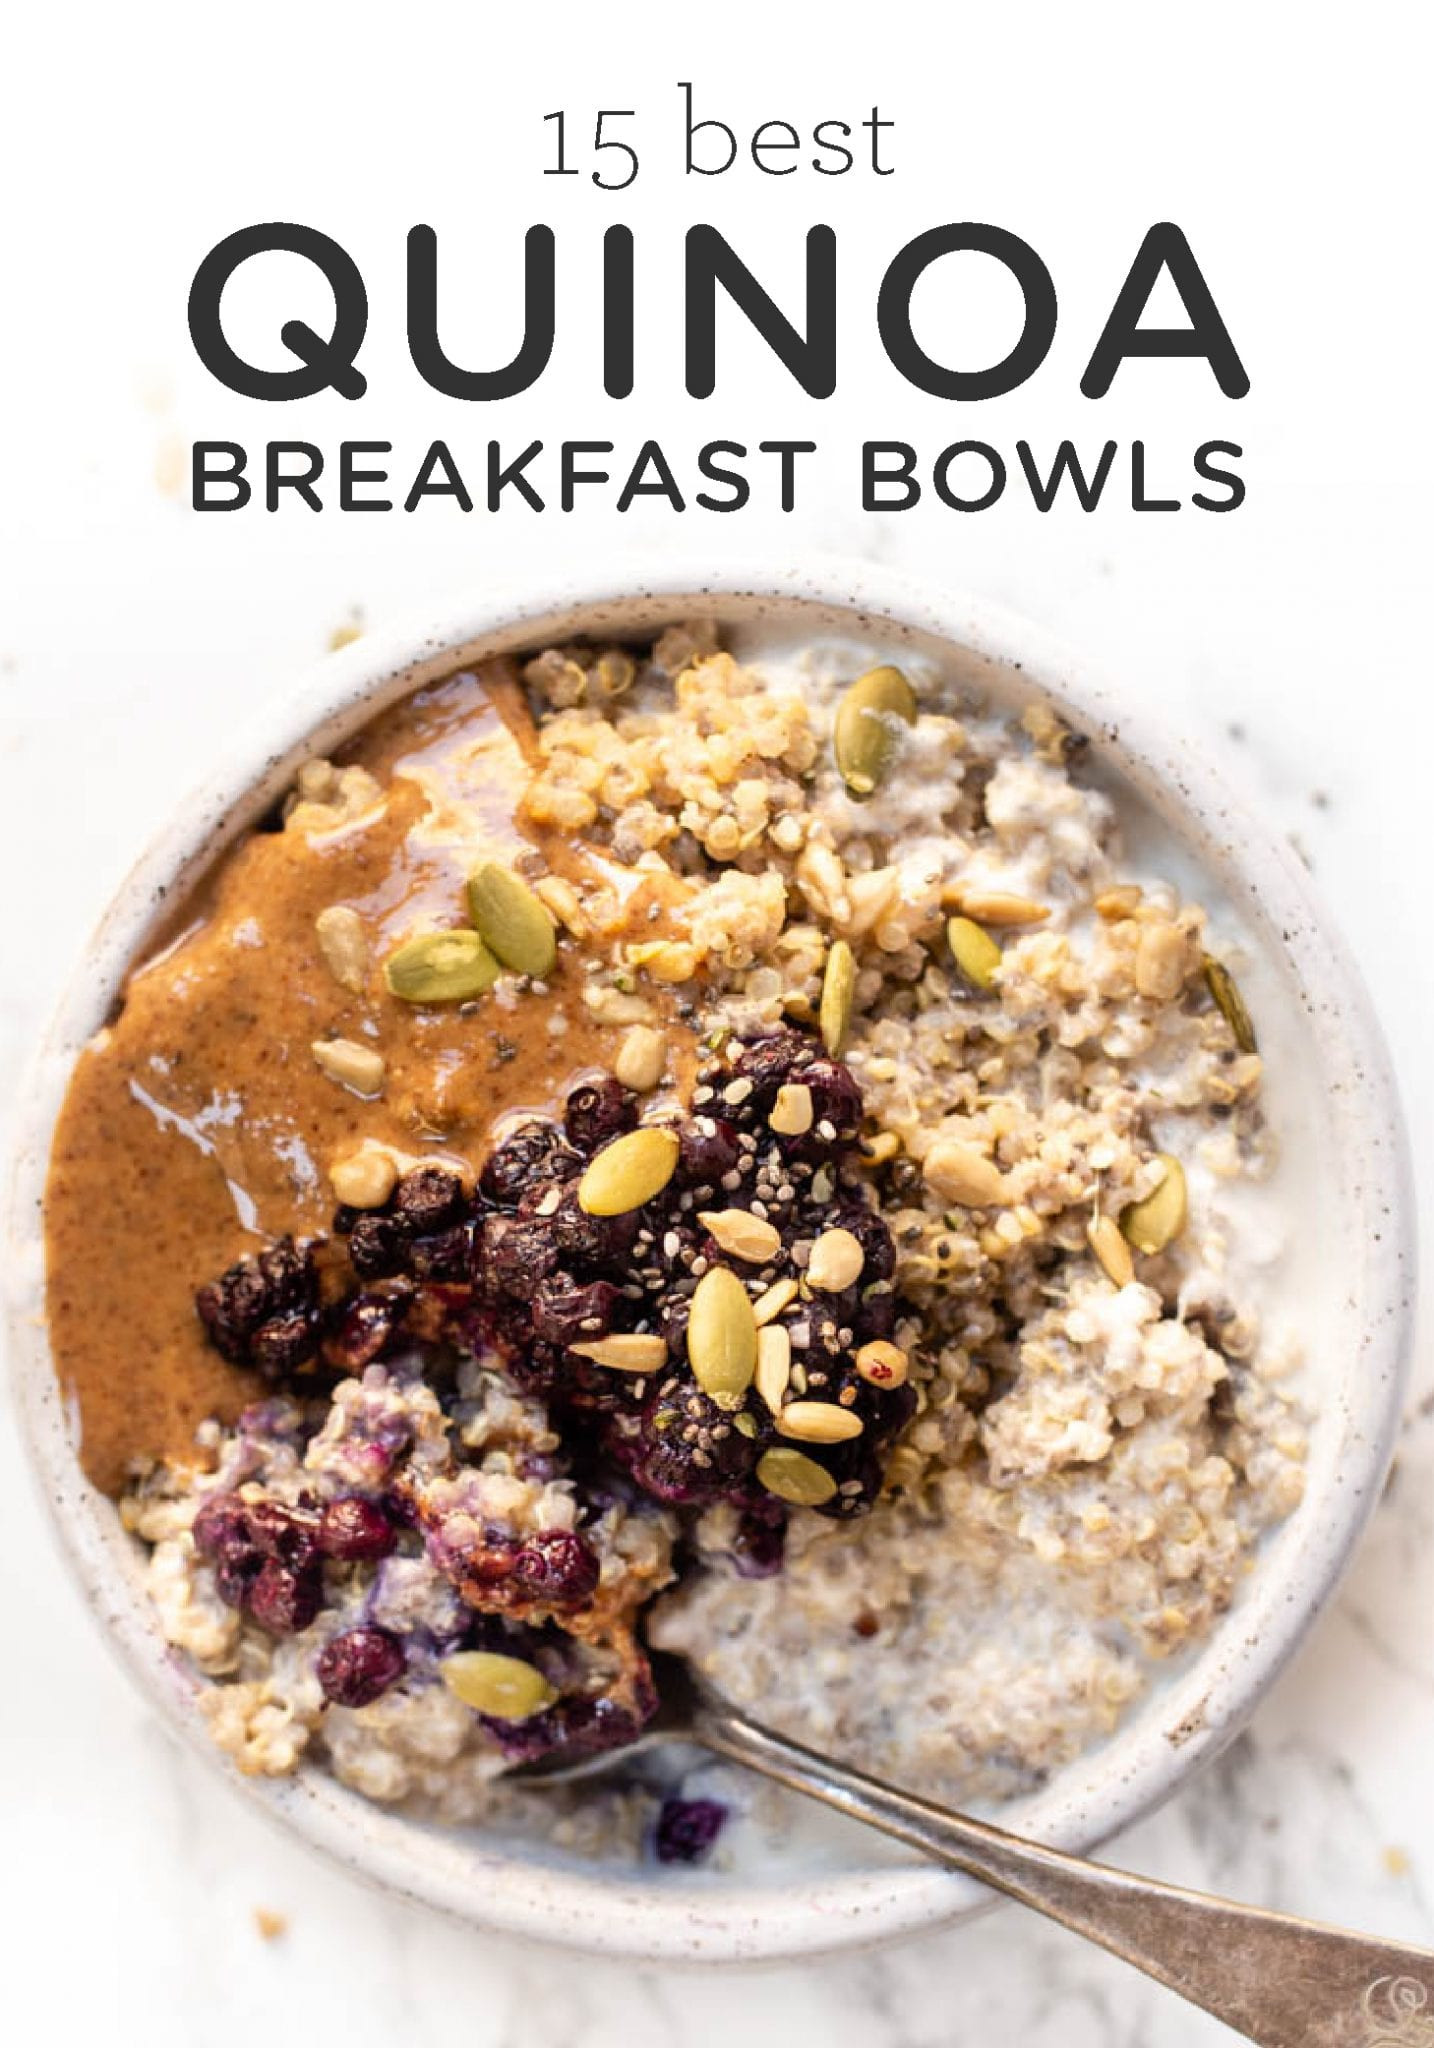 Quinoa Recipes Breakfast
 15 Best Quinoa Breakfast Bowls Simply Quinoa